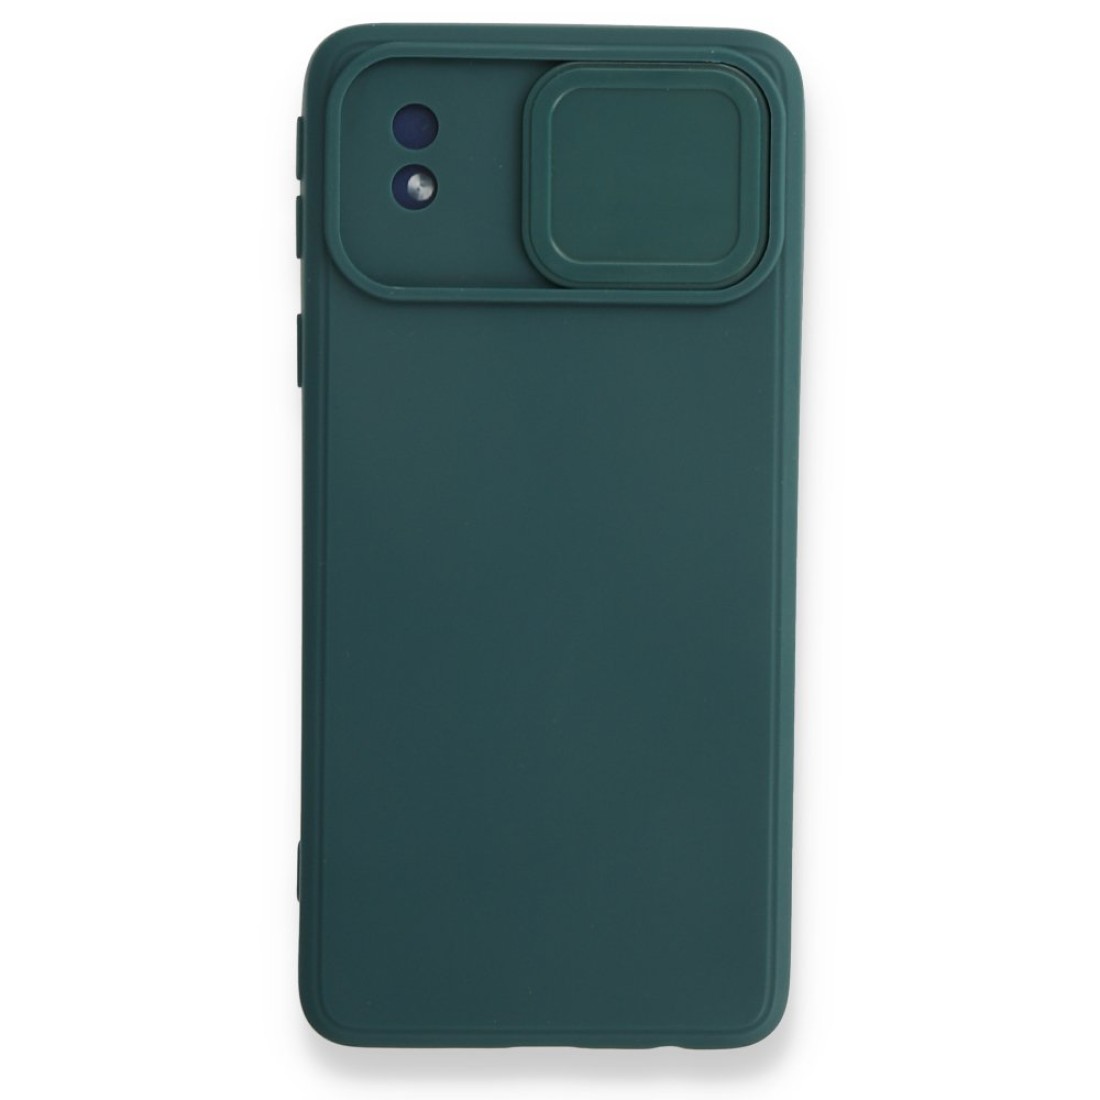 Samsung Galaxy A01 Core Kılıf Color Lens Silikon - Yeşil